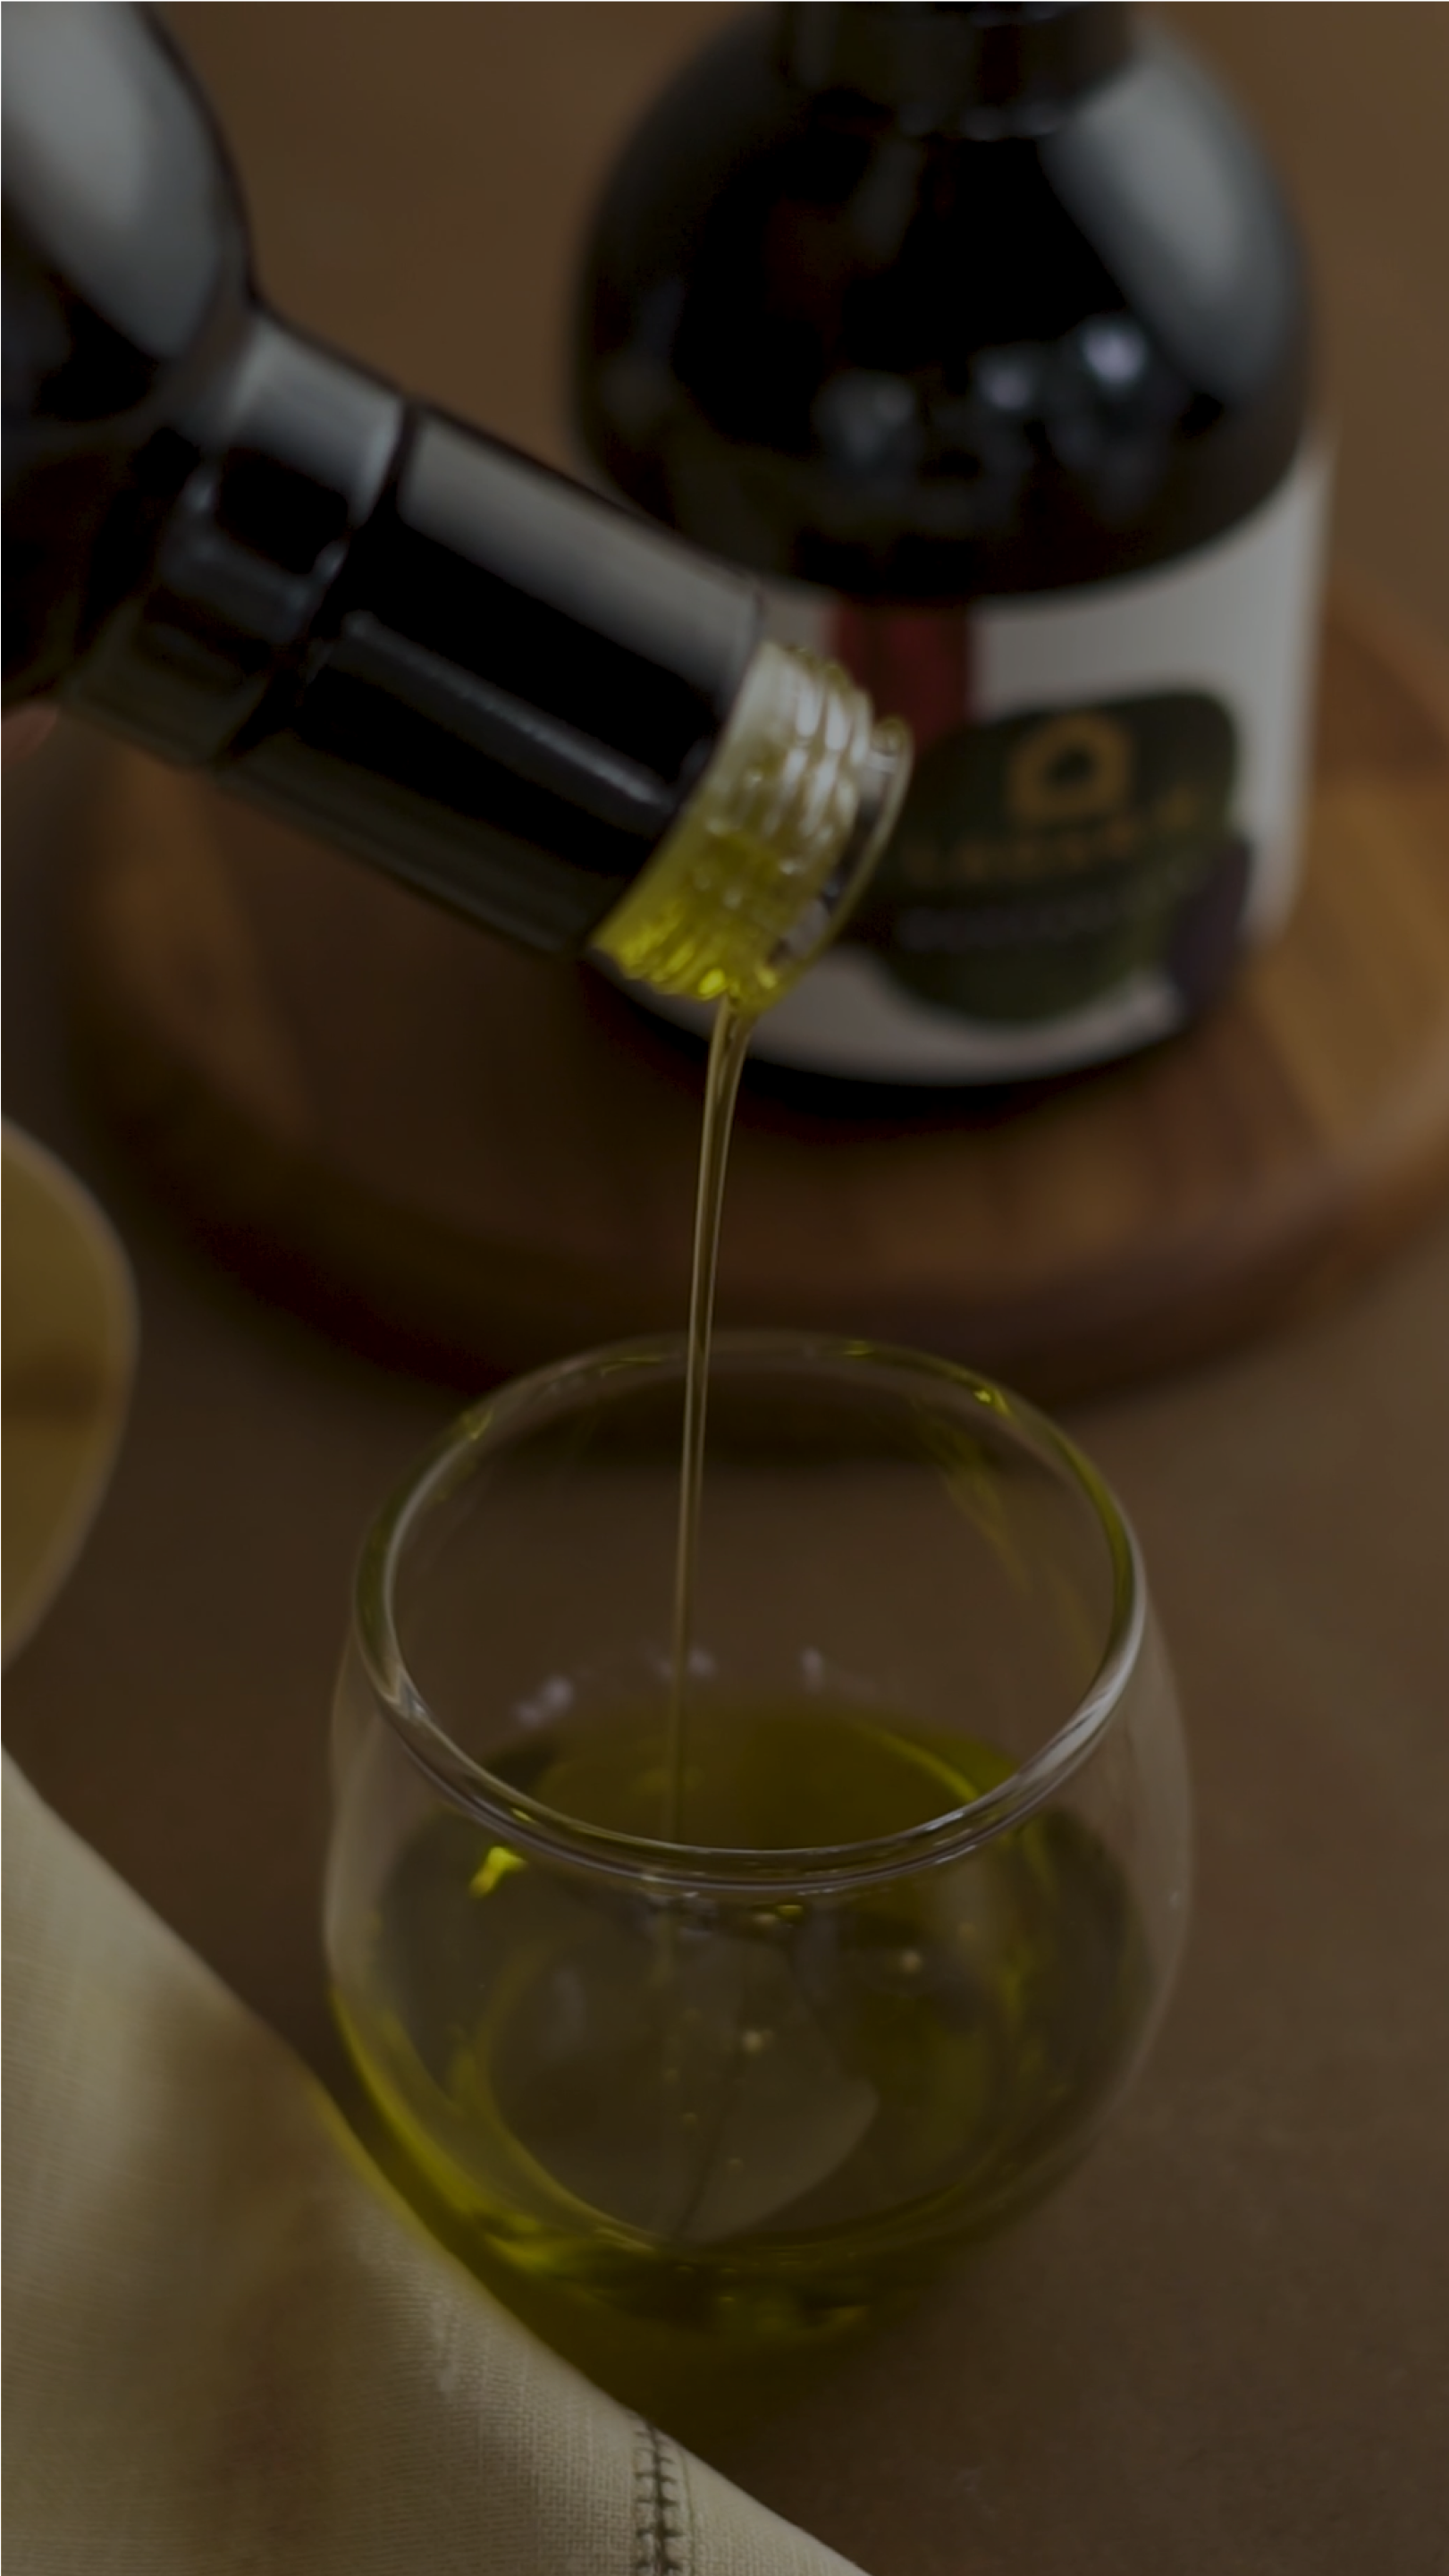 Acidez do azeite de oliva: conheça a importância e saiba combinar com tipos de receitas